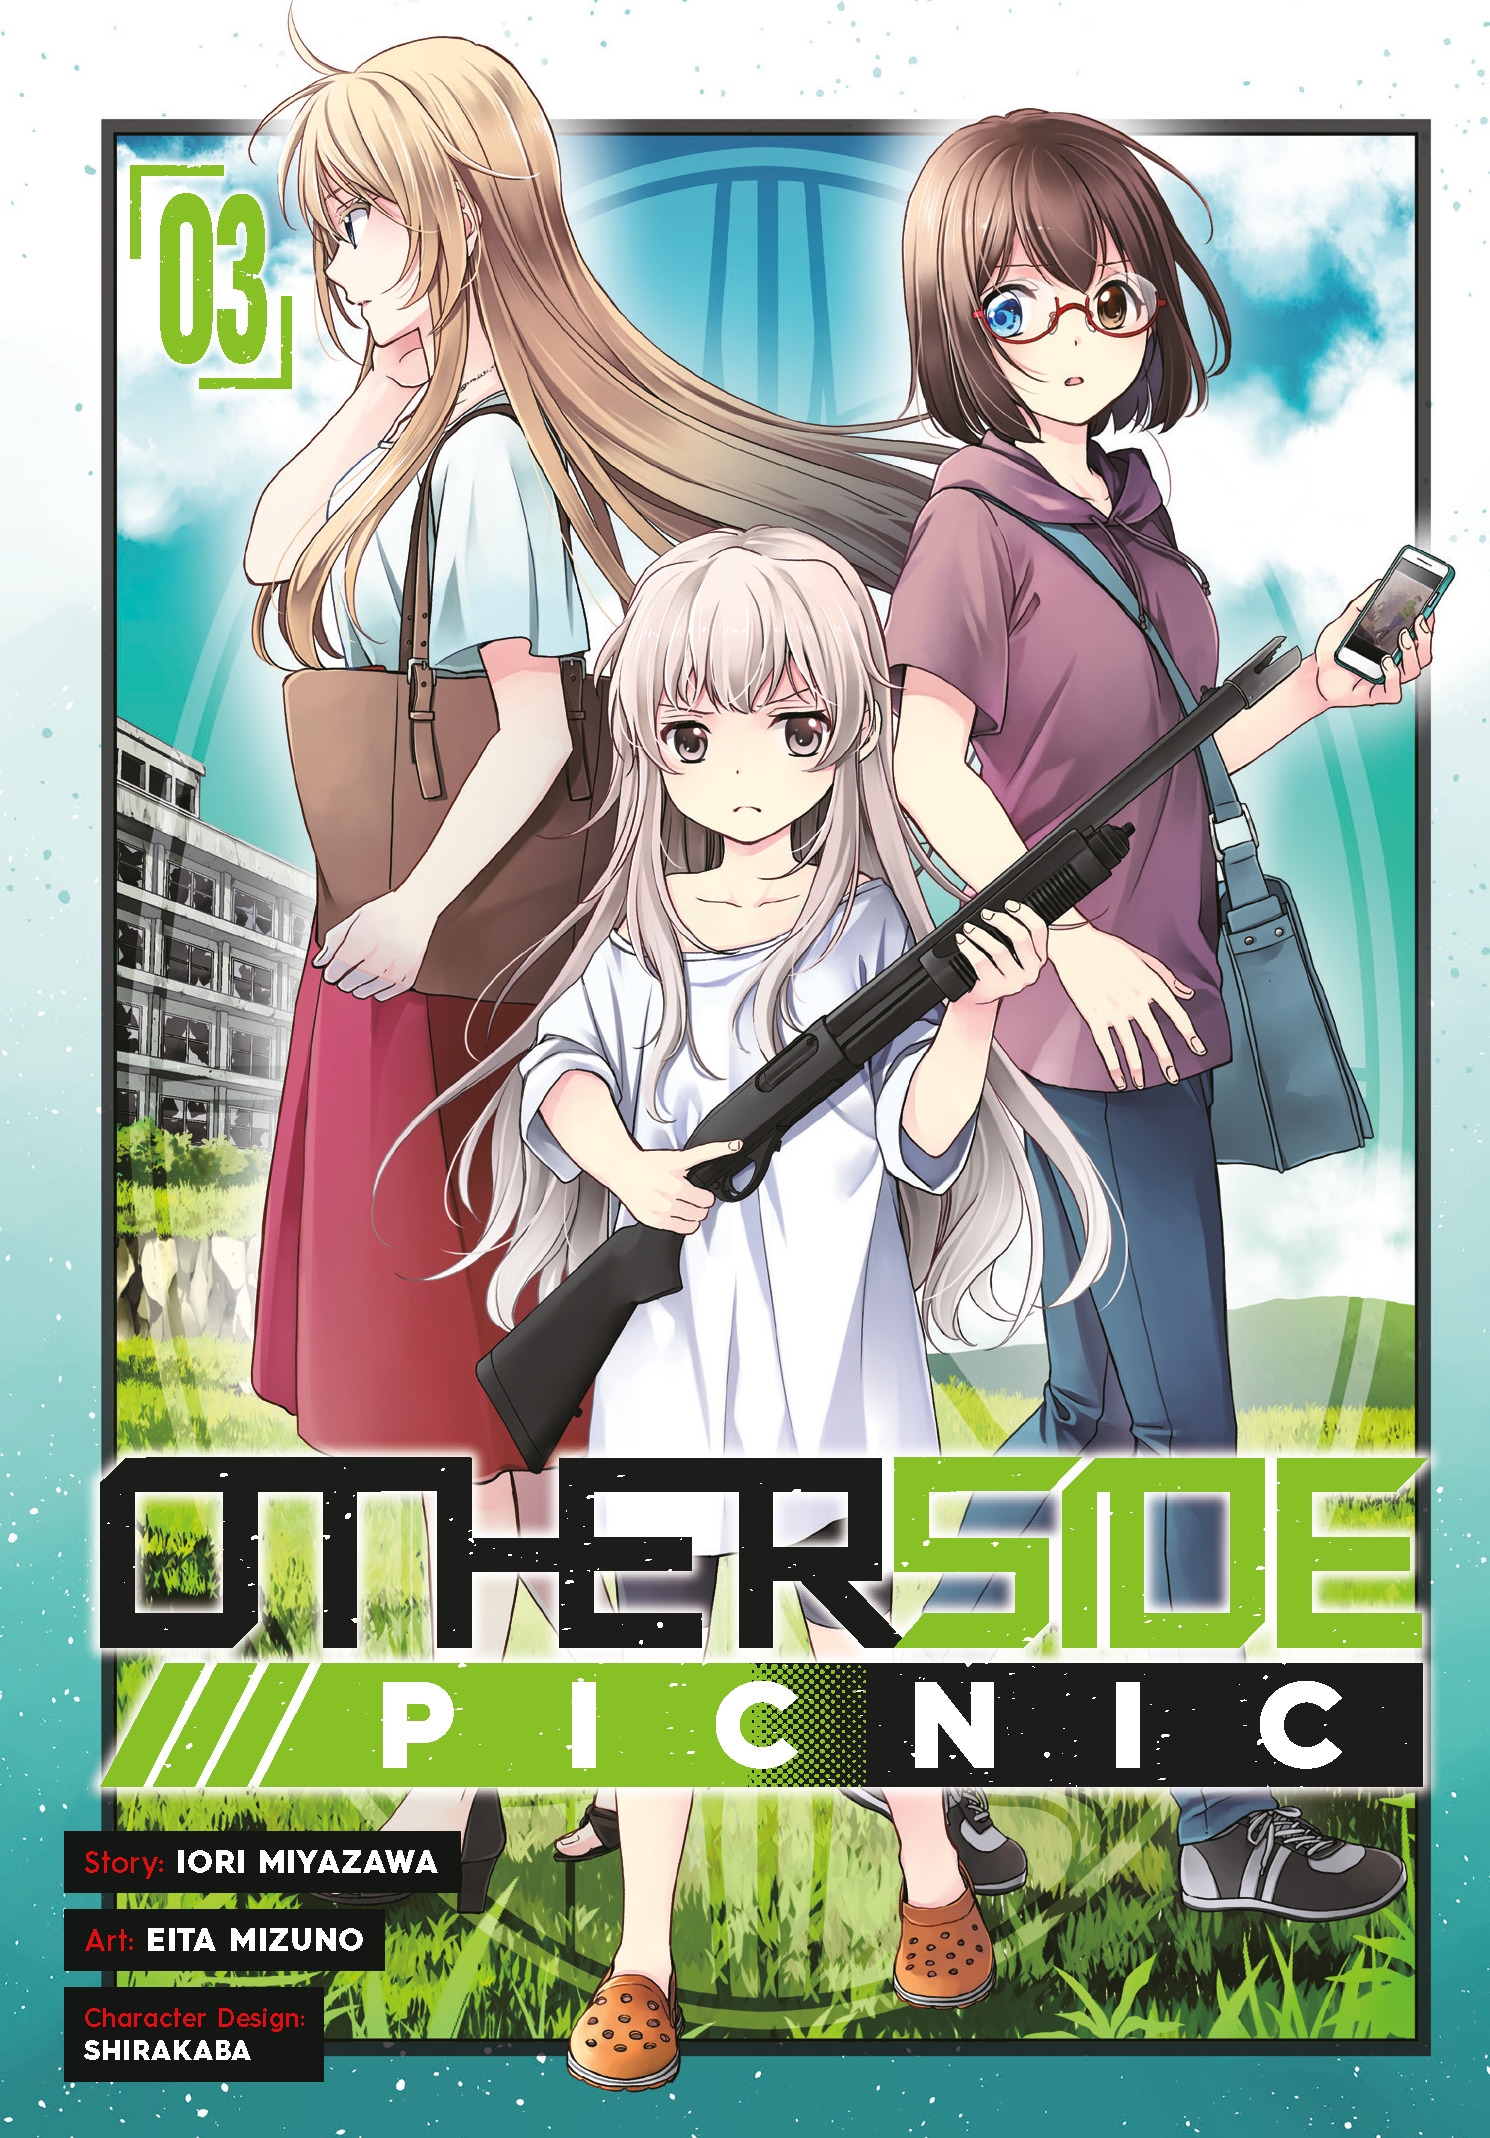 Otherside Picnic 02 (Manga)  Penguin Random House Comics Retail